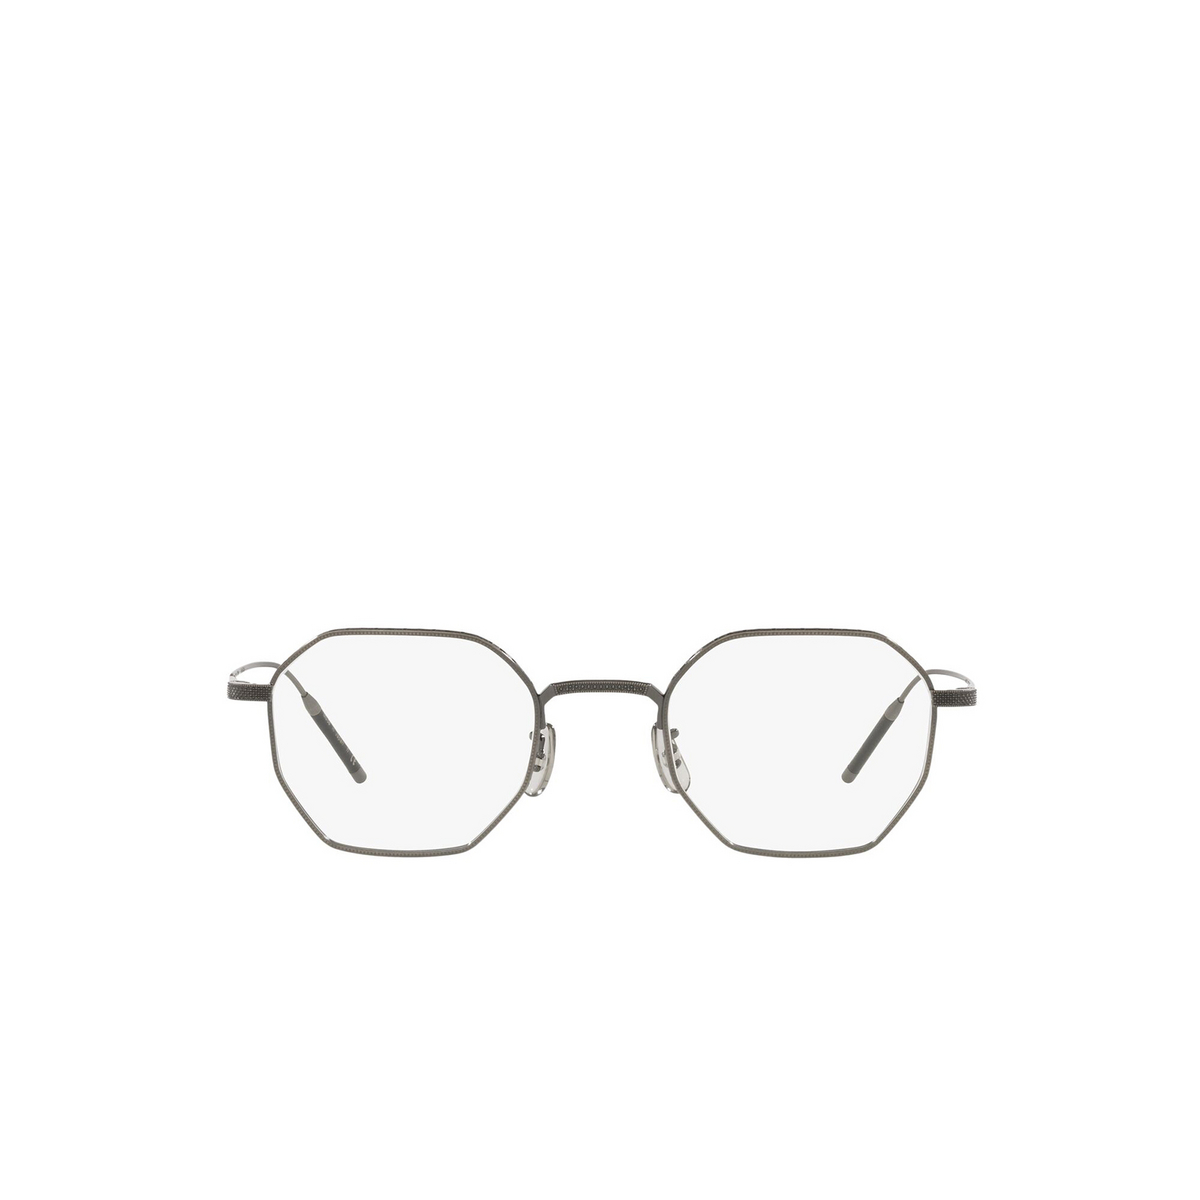 Oliver Peoples® Irregular Eyeglasses: Tk-5 OV1299T color Pewter 5076 - front view.